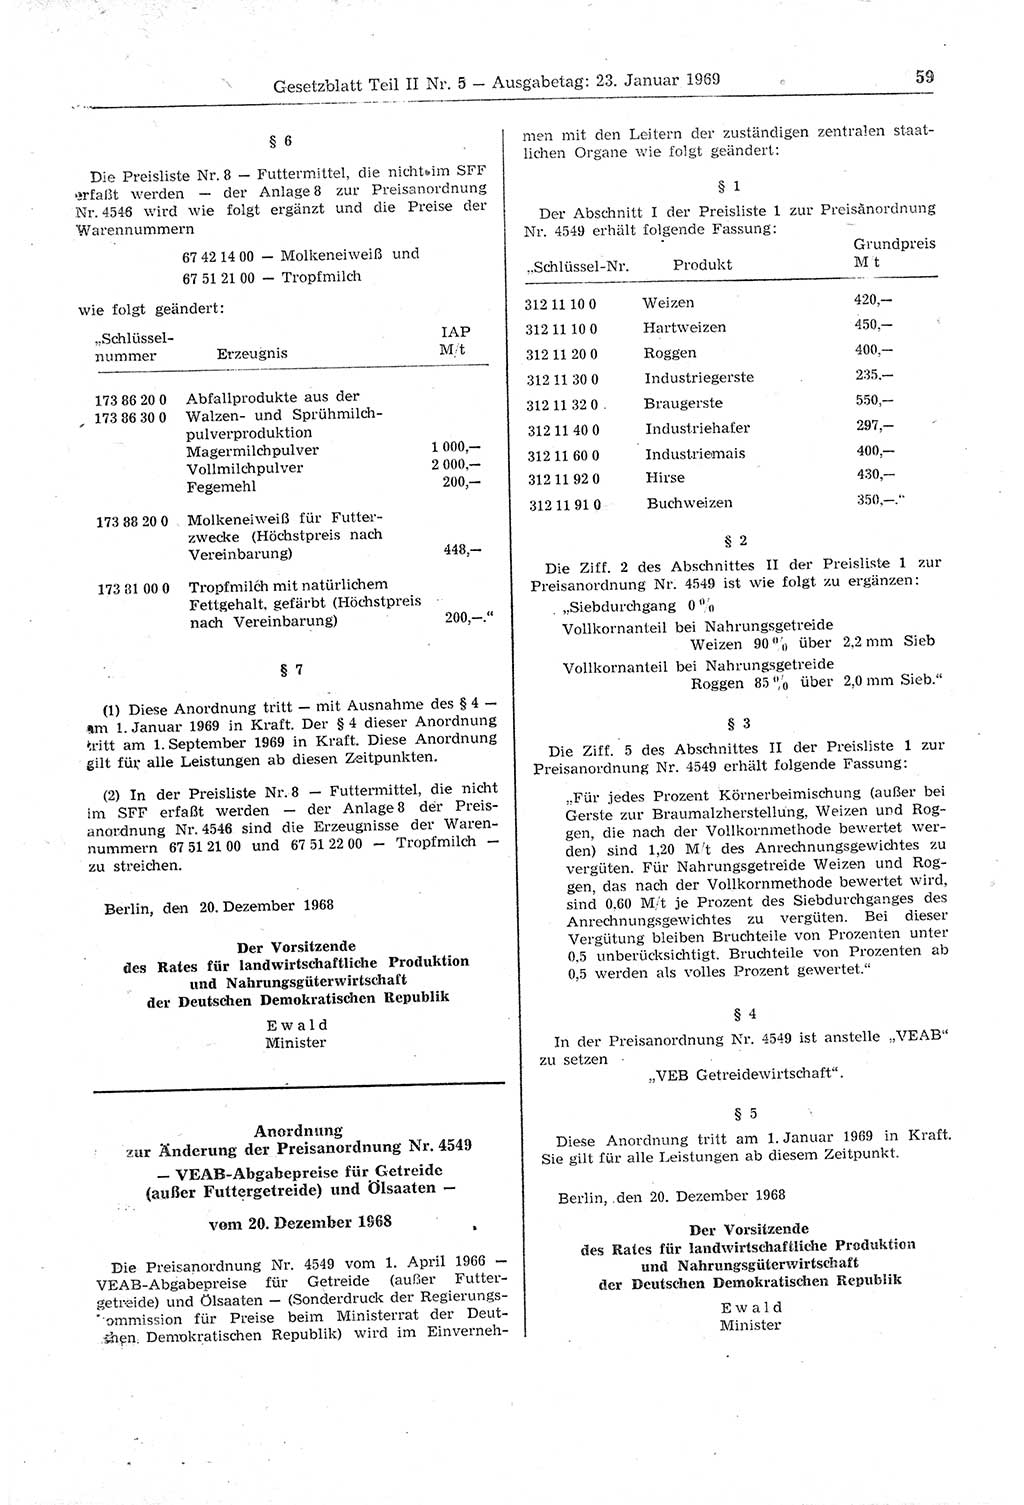 Gesetzblatt (GBl.) der Deutschen Demokratischen Republik (DDR) Teil ⅠⅠ 1969, Seite 59 (GBl. DDR ⅠⅠ 1969, S. 59)